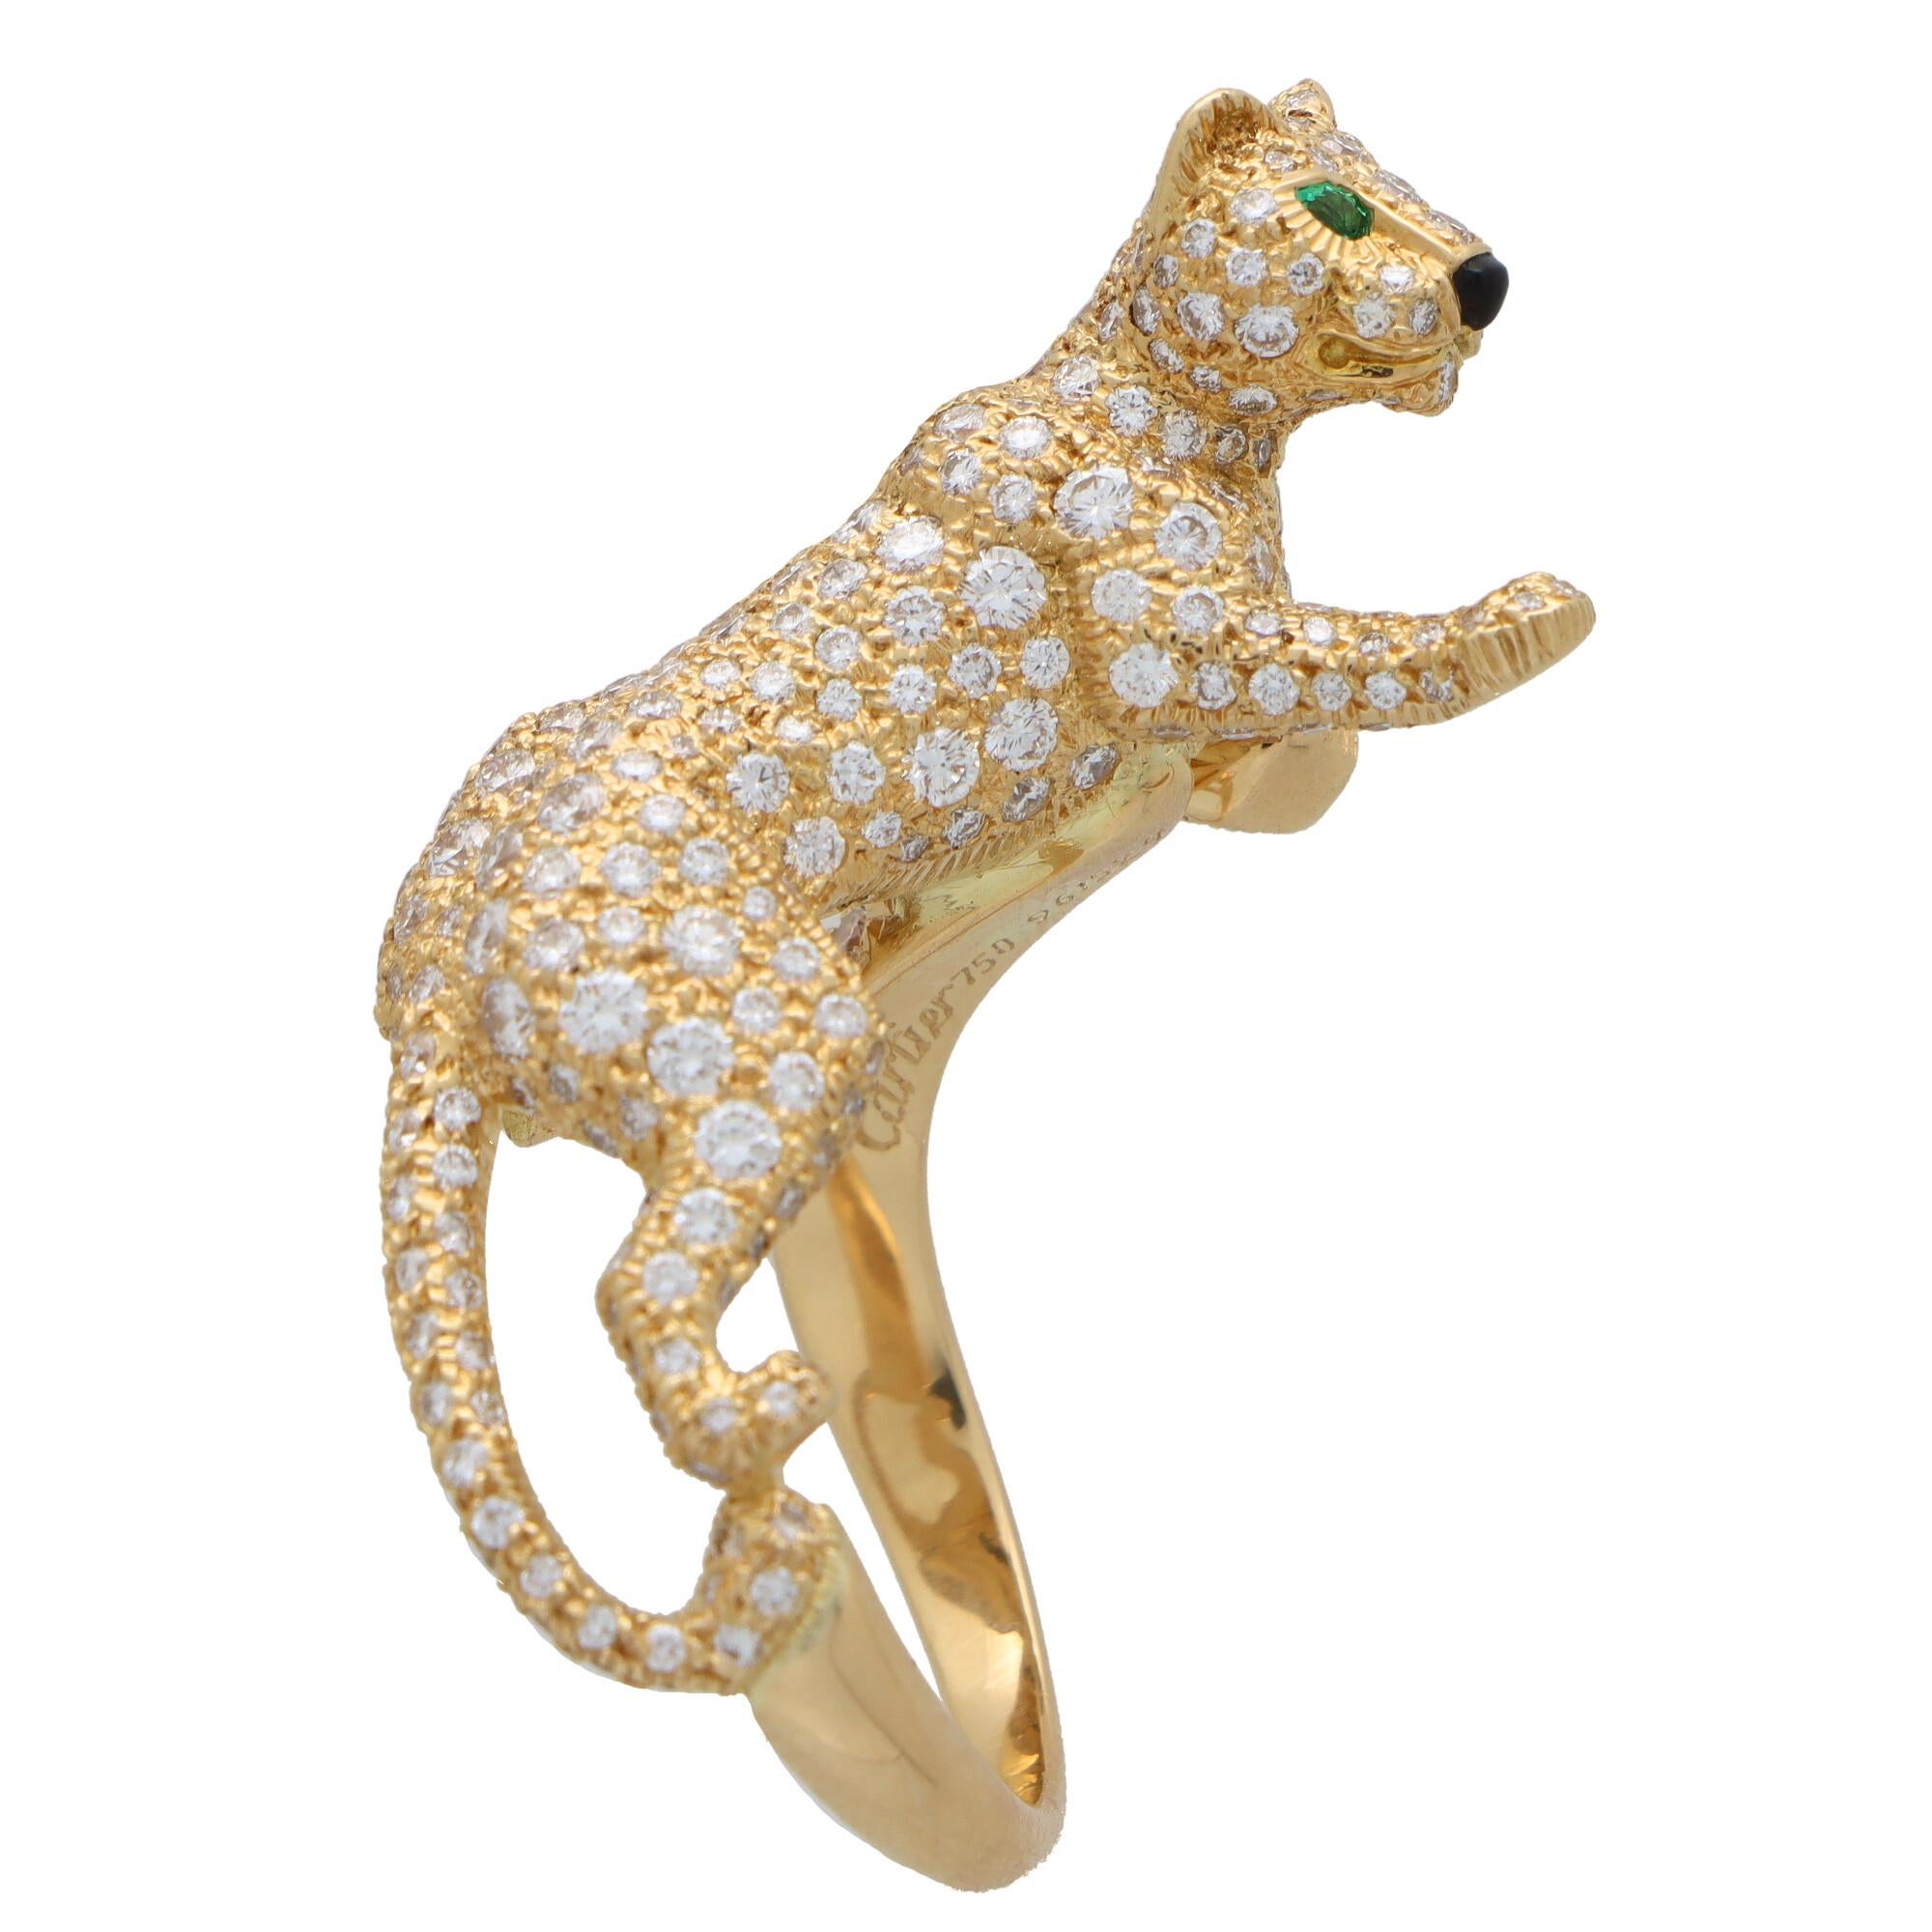 Modern Cartier Diamond and Green Garnet Walking Panther Ring Set in 18k Yellow Gold